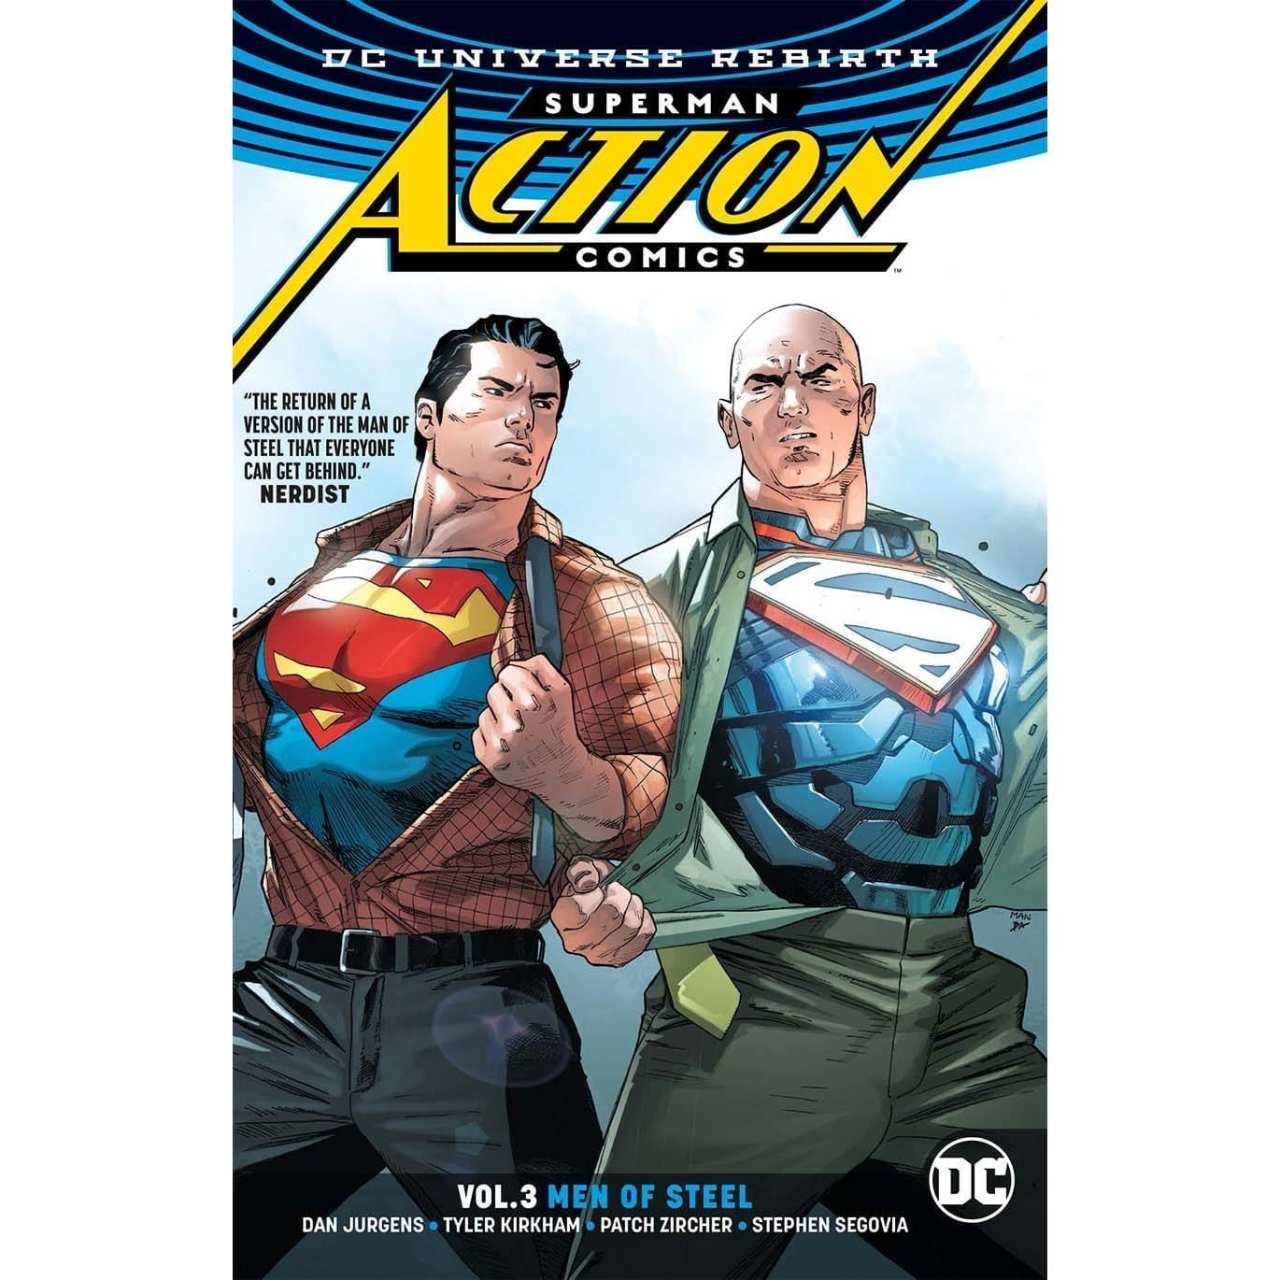 Superman: Action Comics Vol. 3: Men of Steel